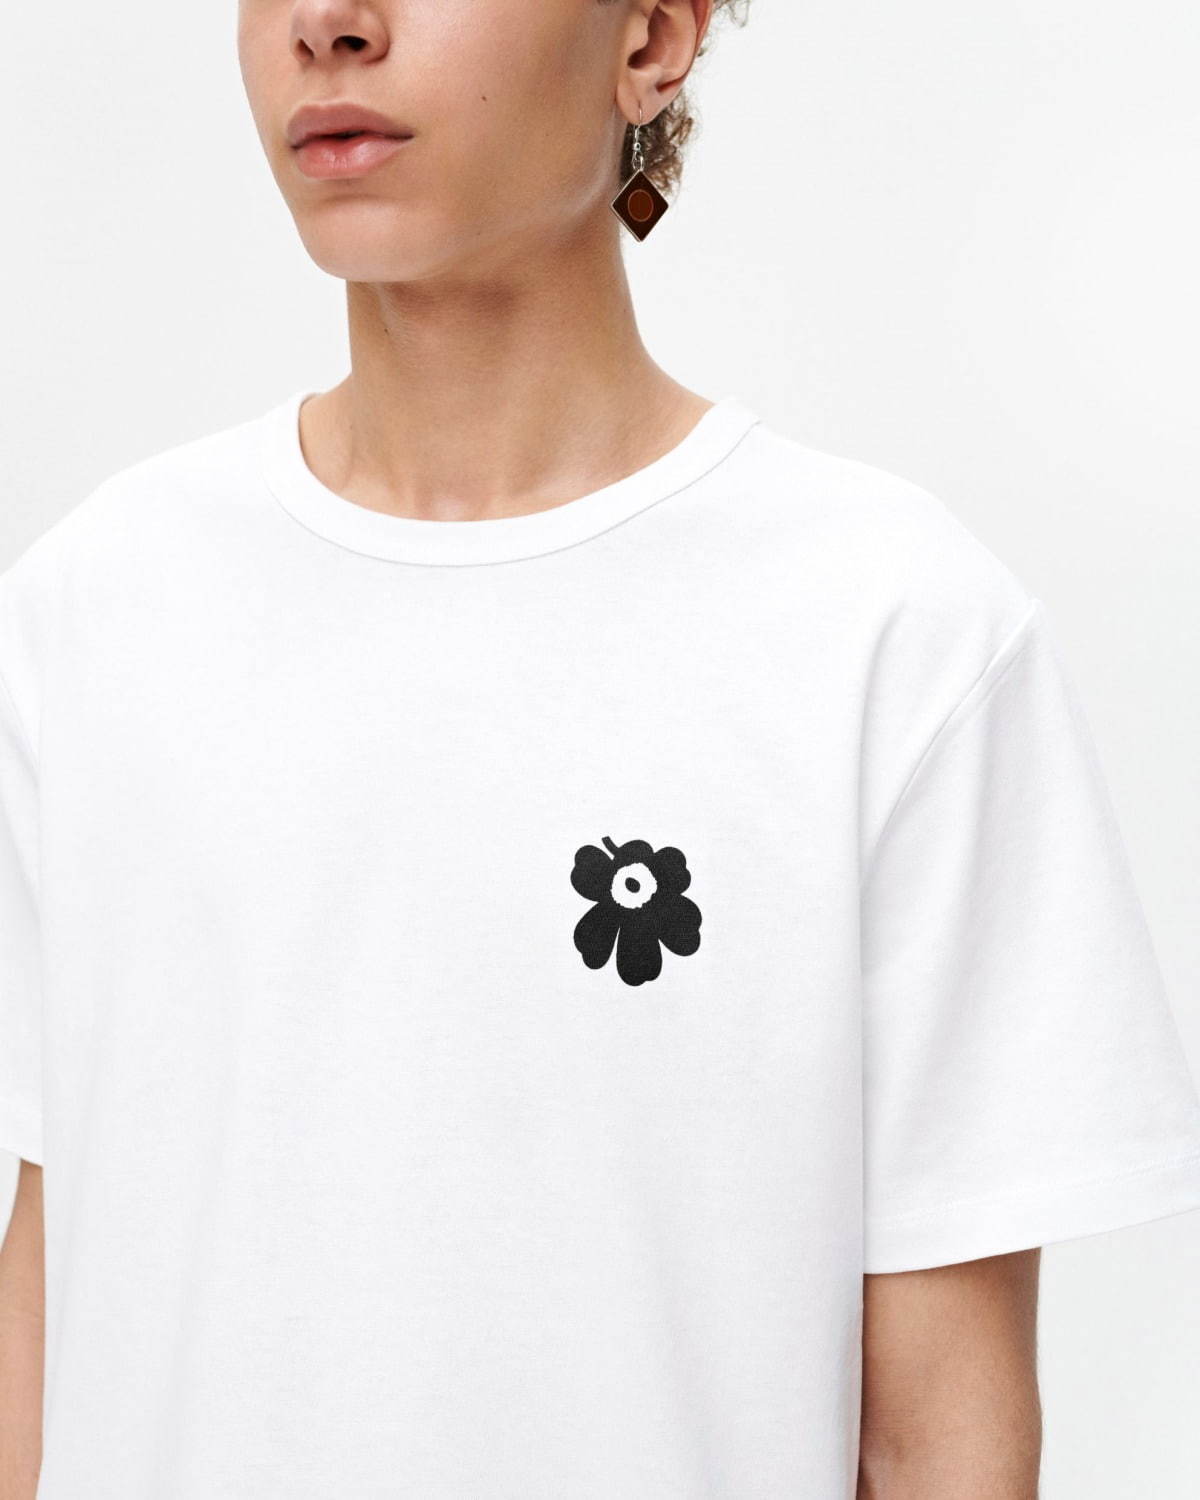 マリメッコ キオスキ世界初のコンセプトストアがルクア大阪に 限定tシャツも発売 ファッションプレス